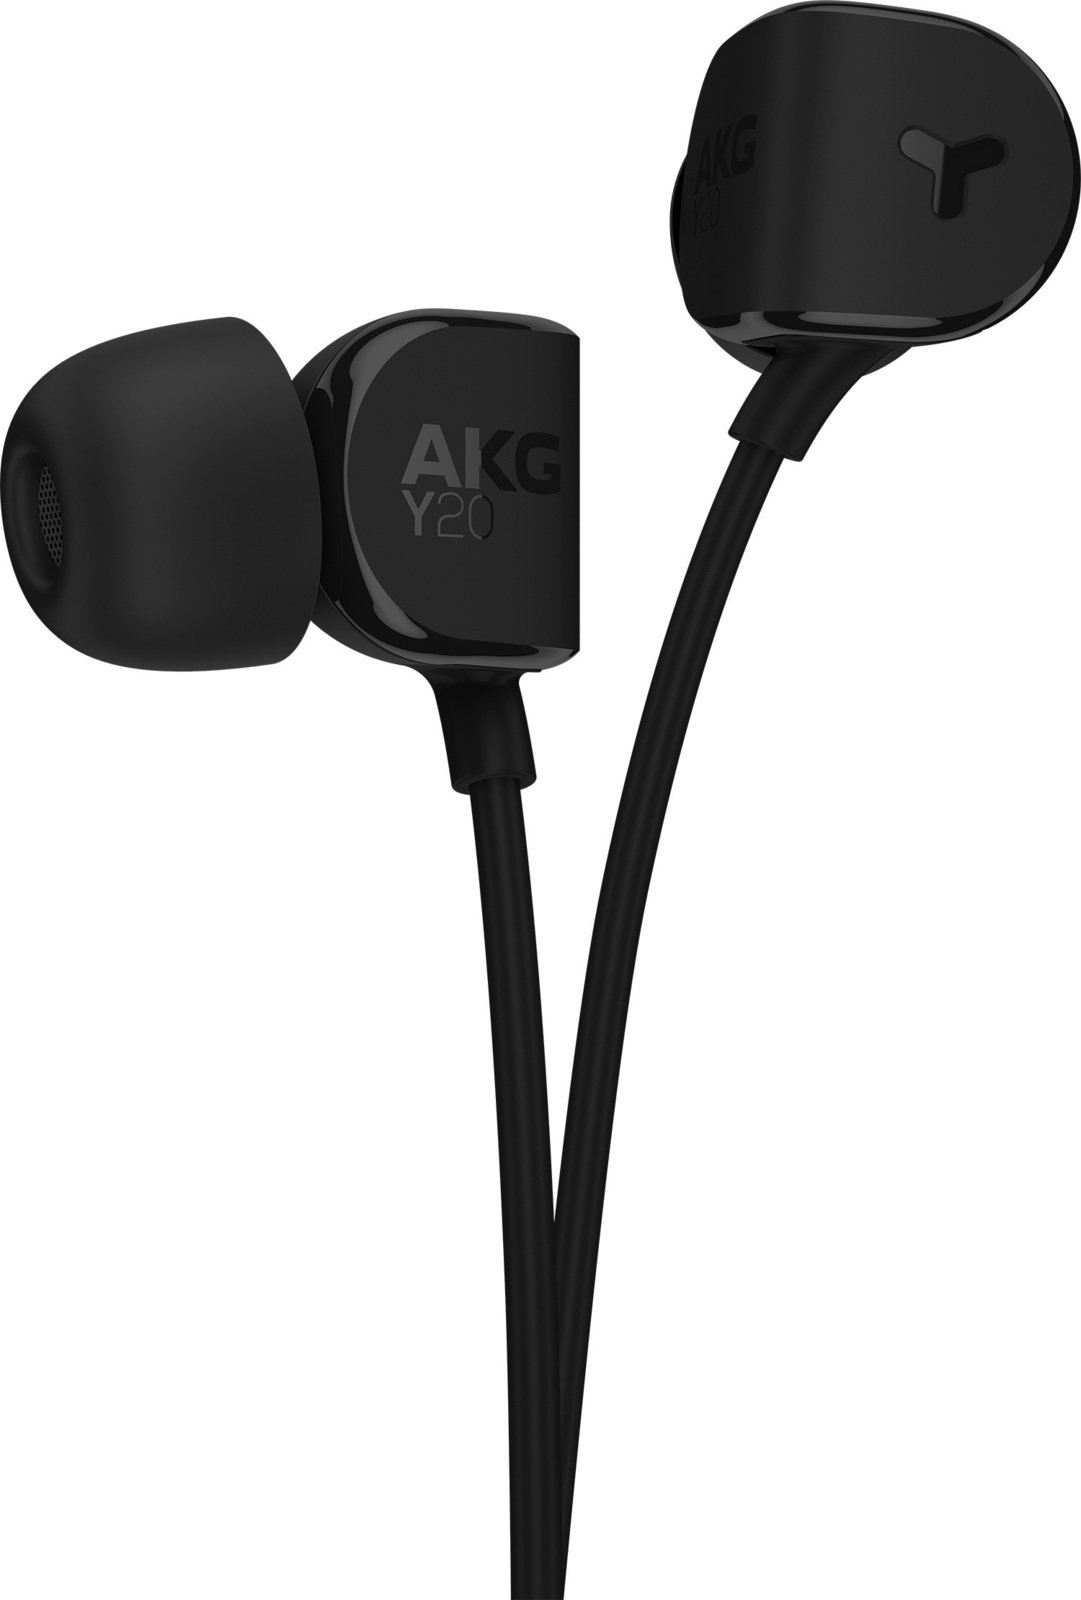 In-Ear Headphones AKG Y20 Black